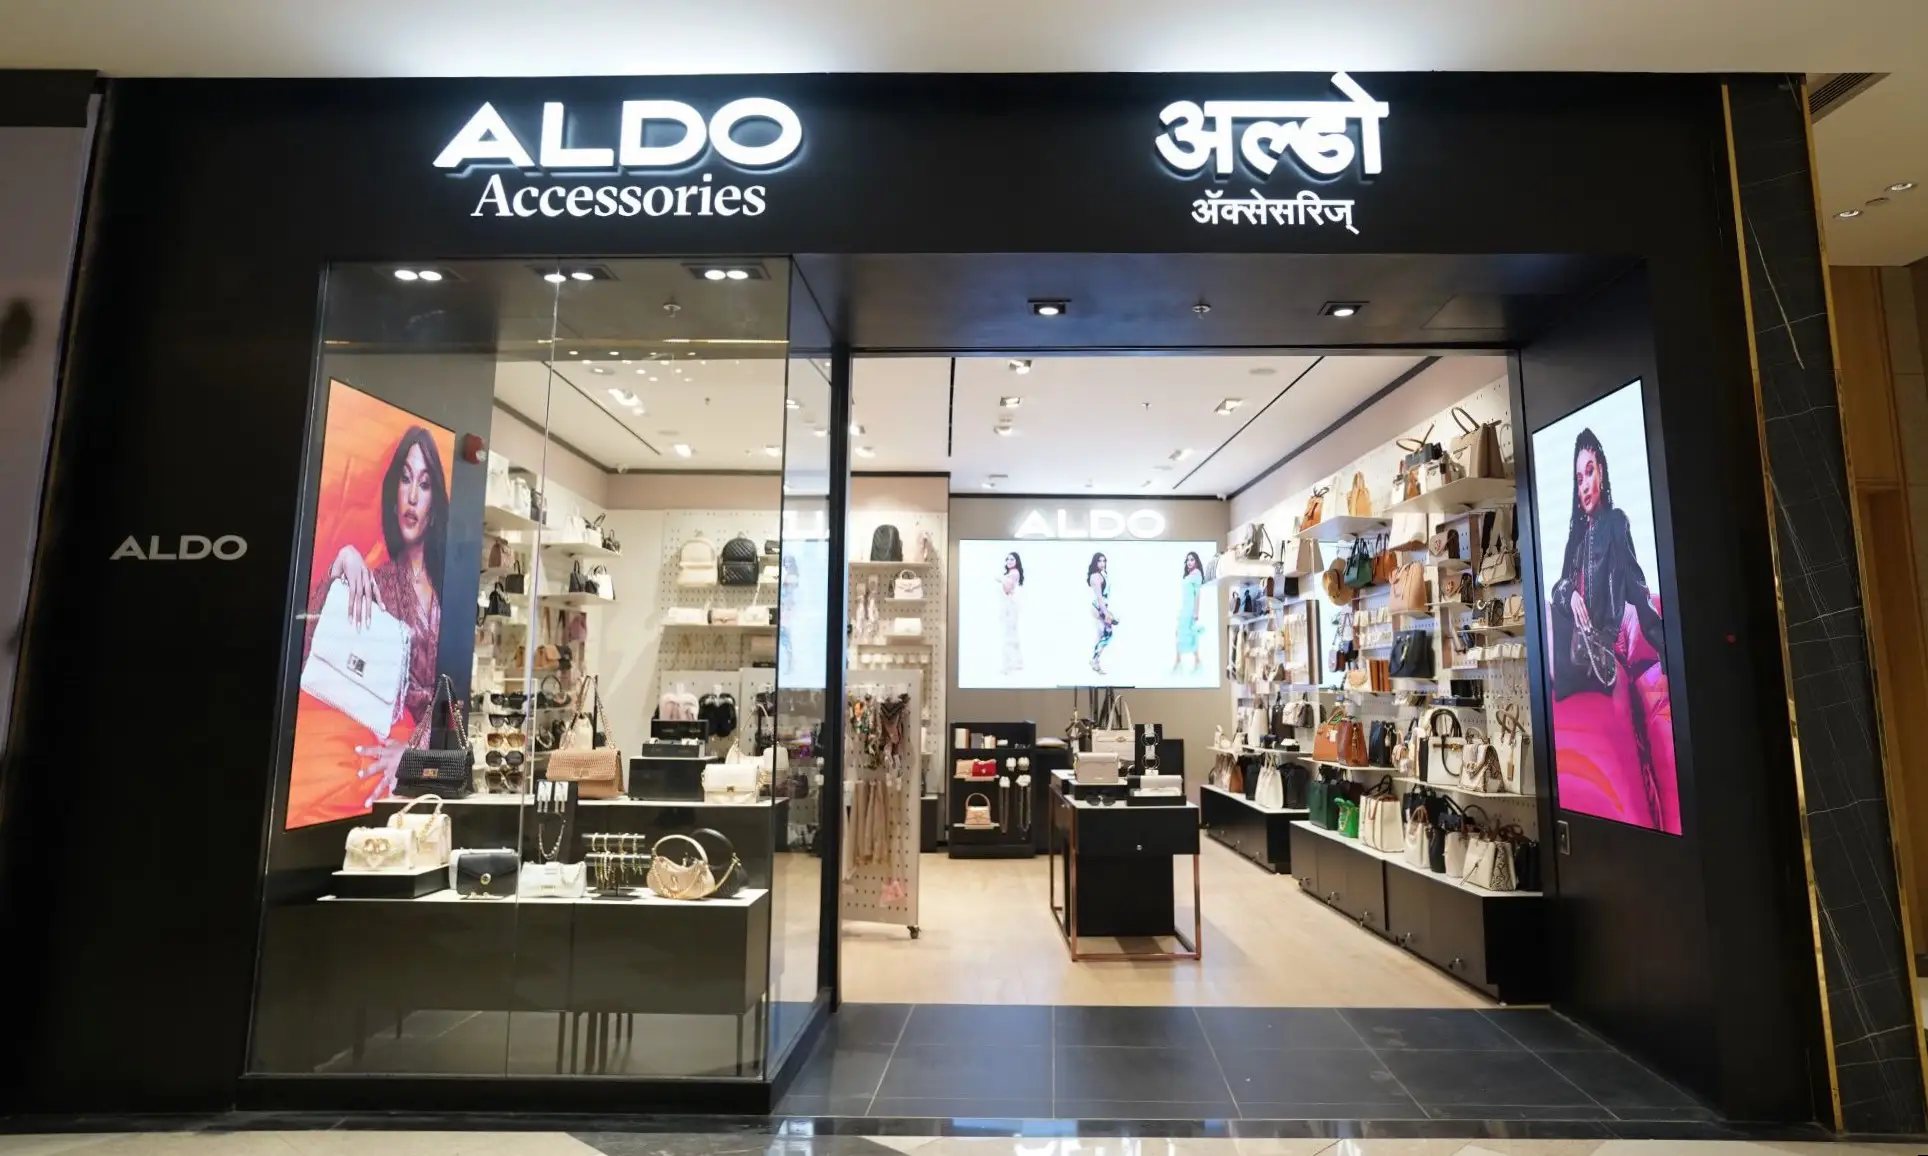 تم افتتاح متجر ألدو إكسسوارات في فينيكس مول في ميلينيوم في بيون الهند